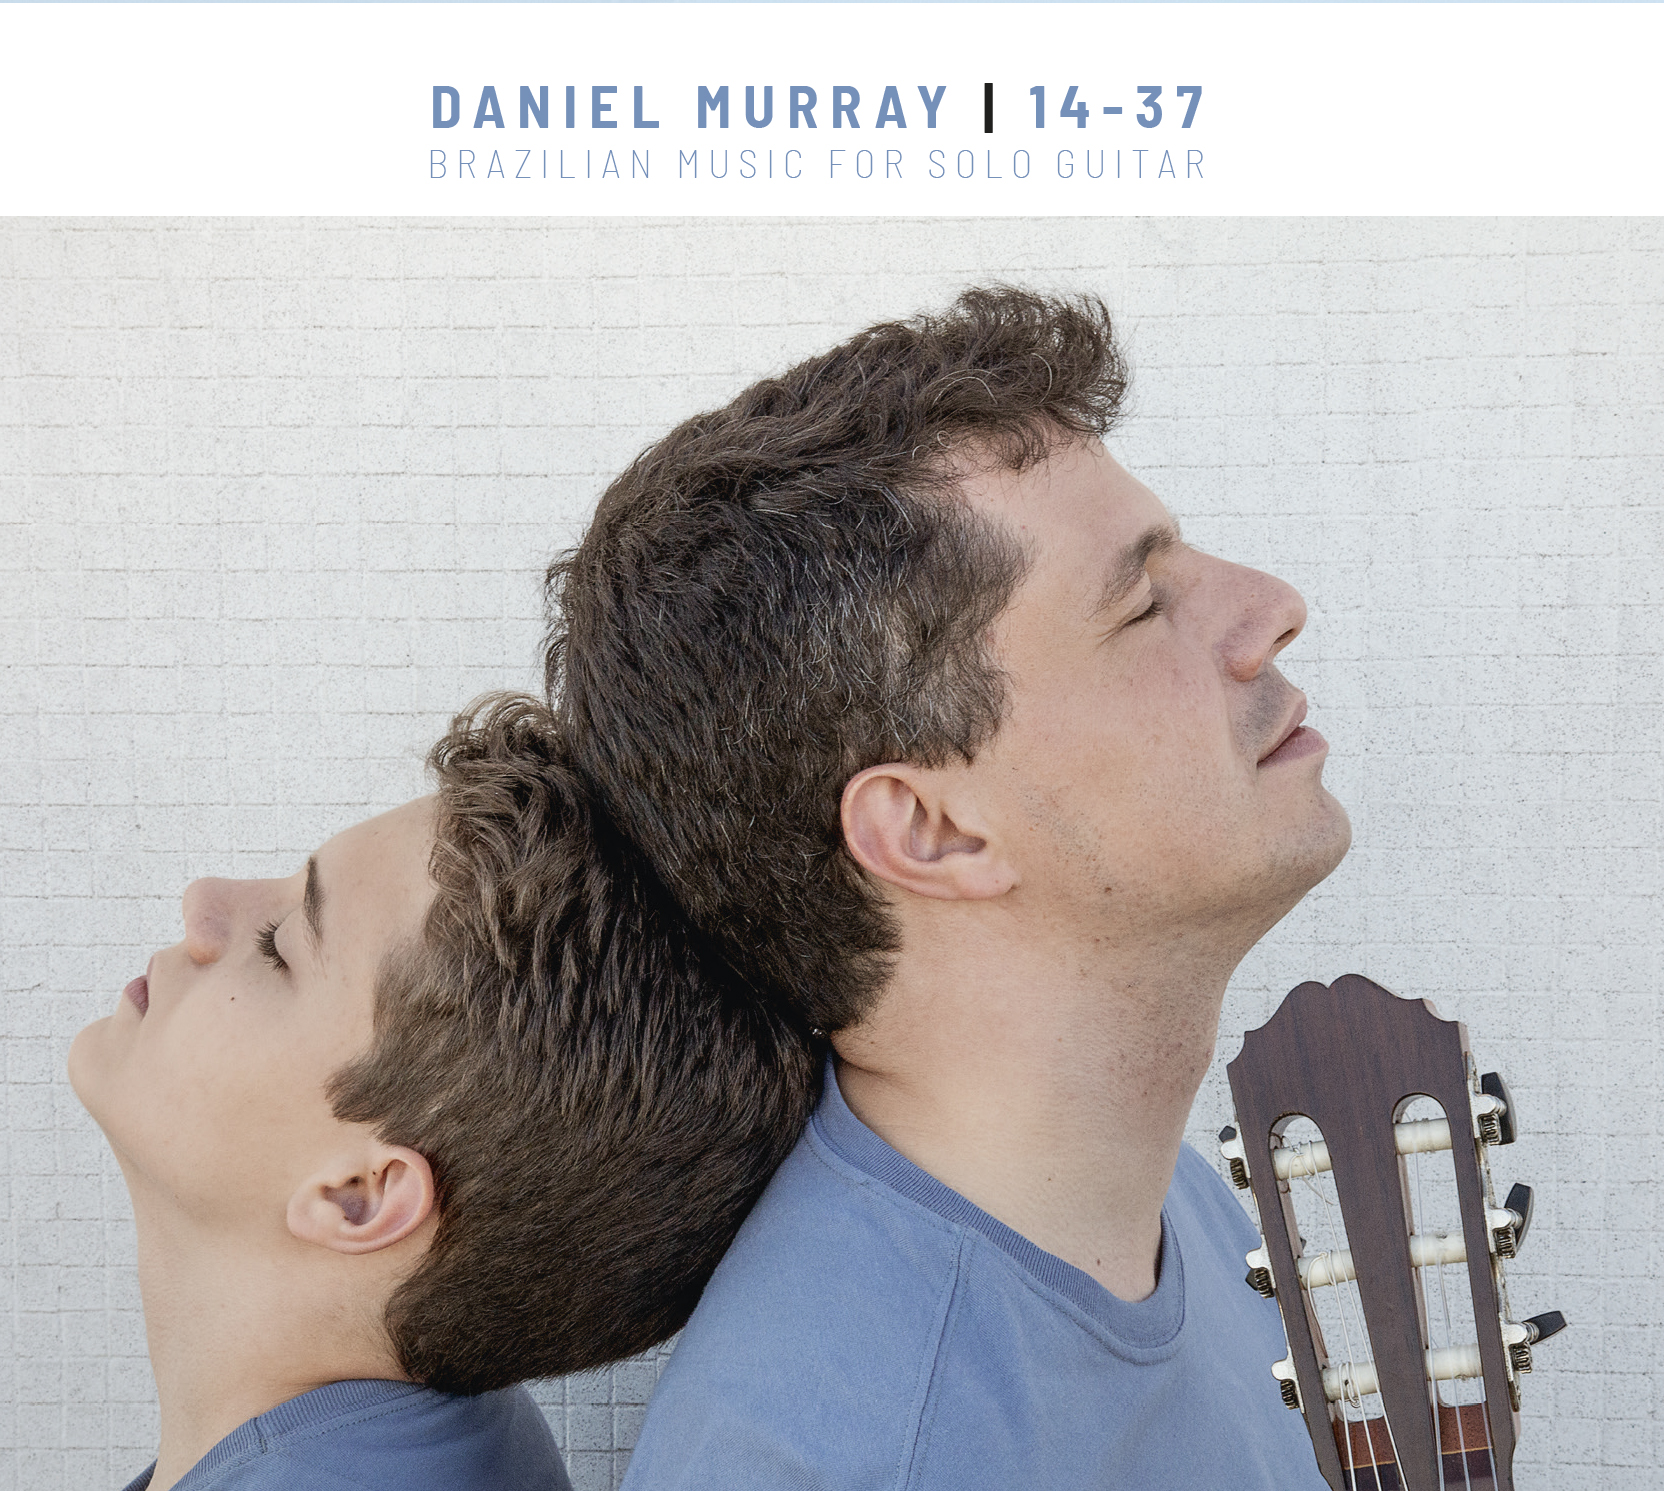 CD 14-37 / Brazilian Music for Solo Guitar, (gravado na Alemanha pela Acoustic Music Records) Daniel Murray-violão